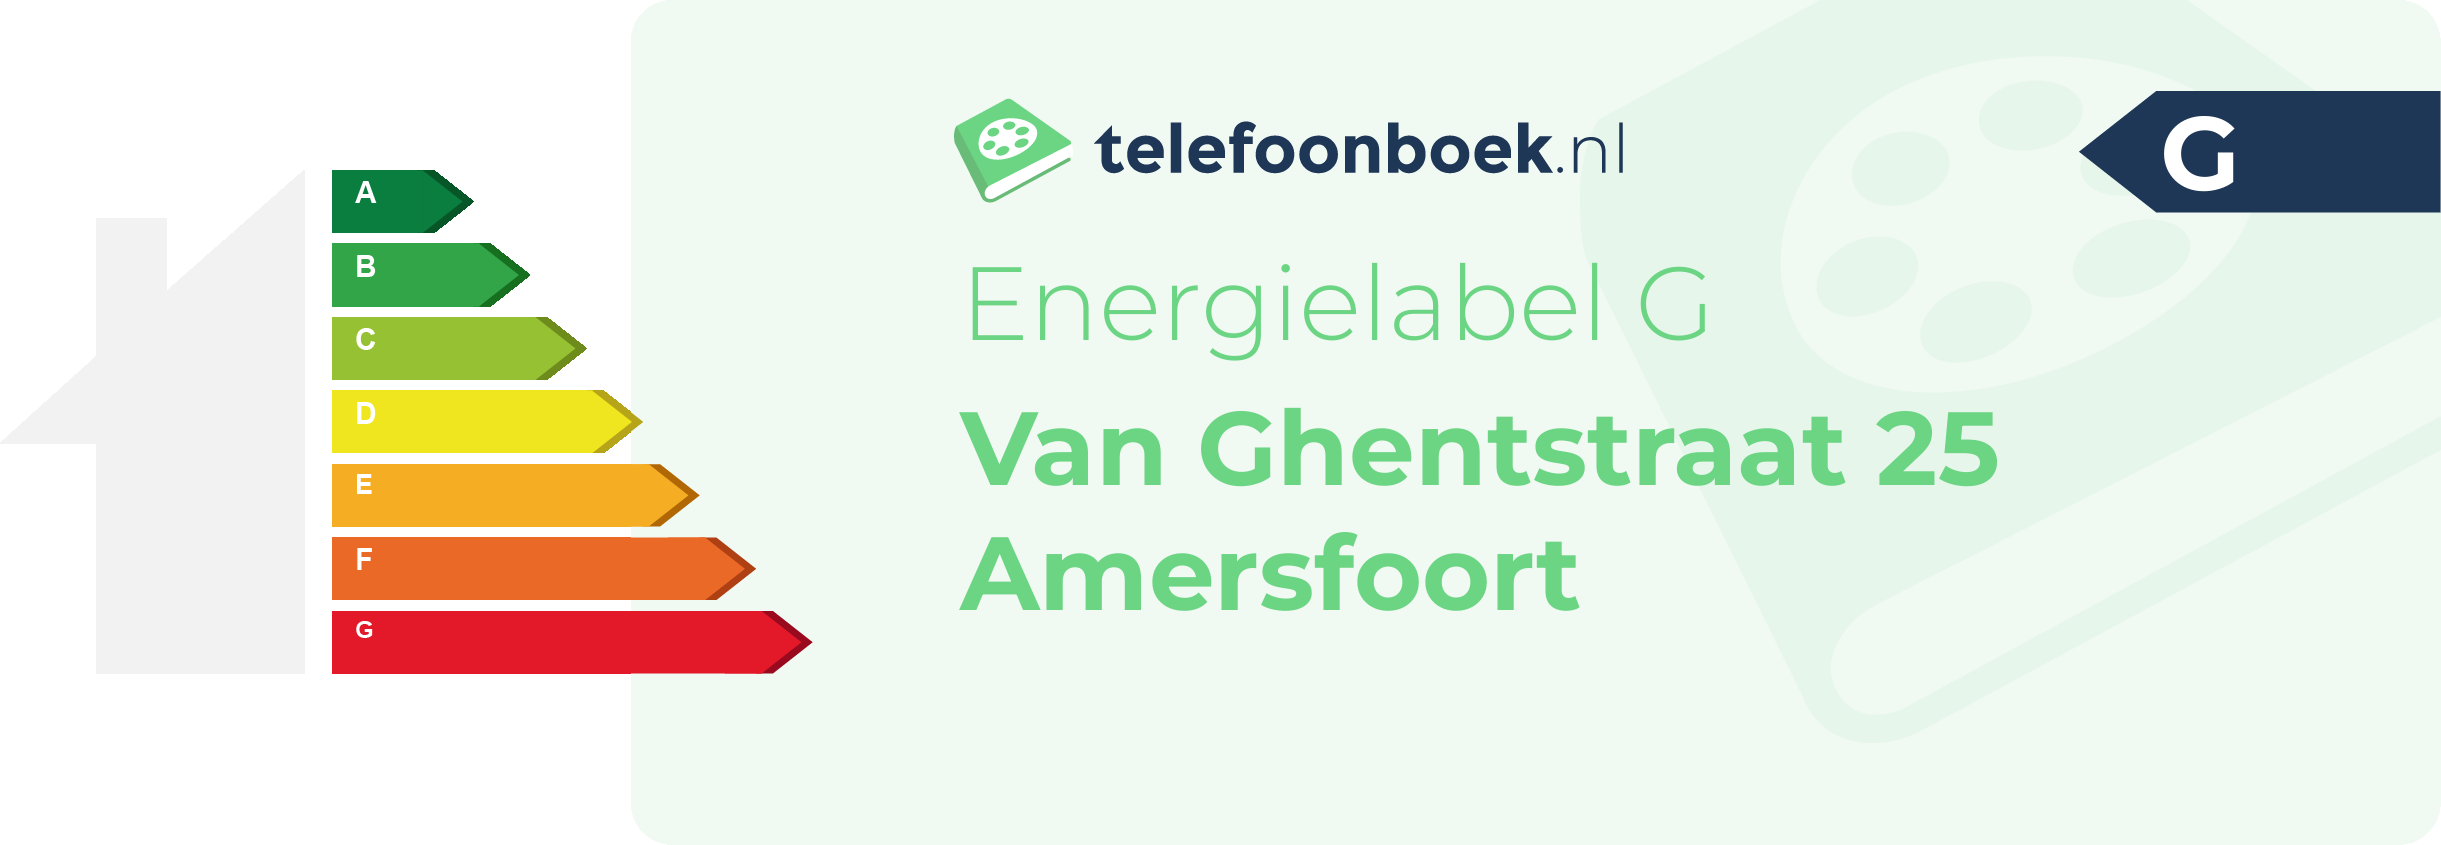 Energielabel Van Ghentstraat 25 Amersfoort